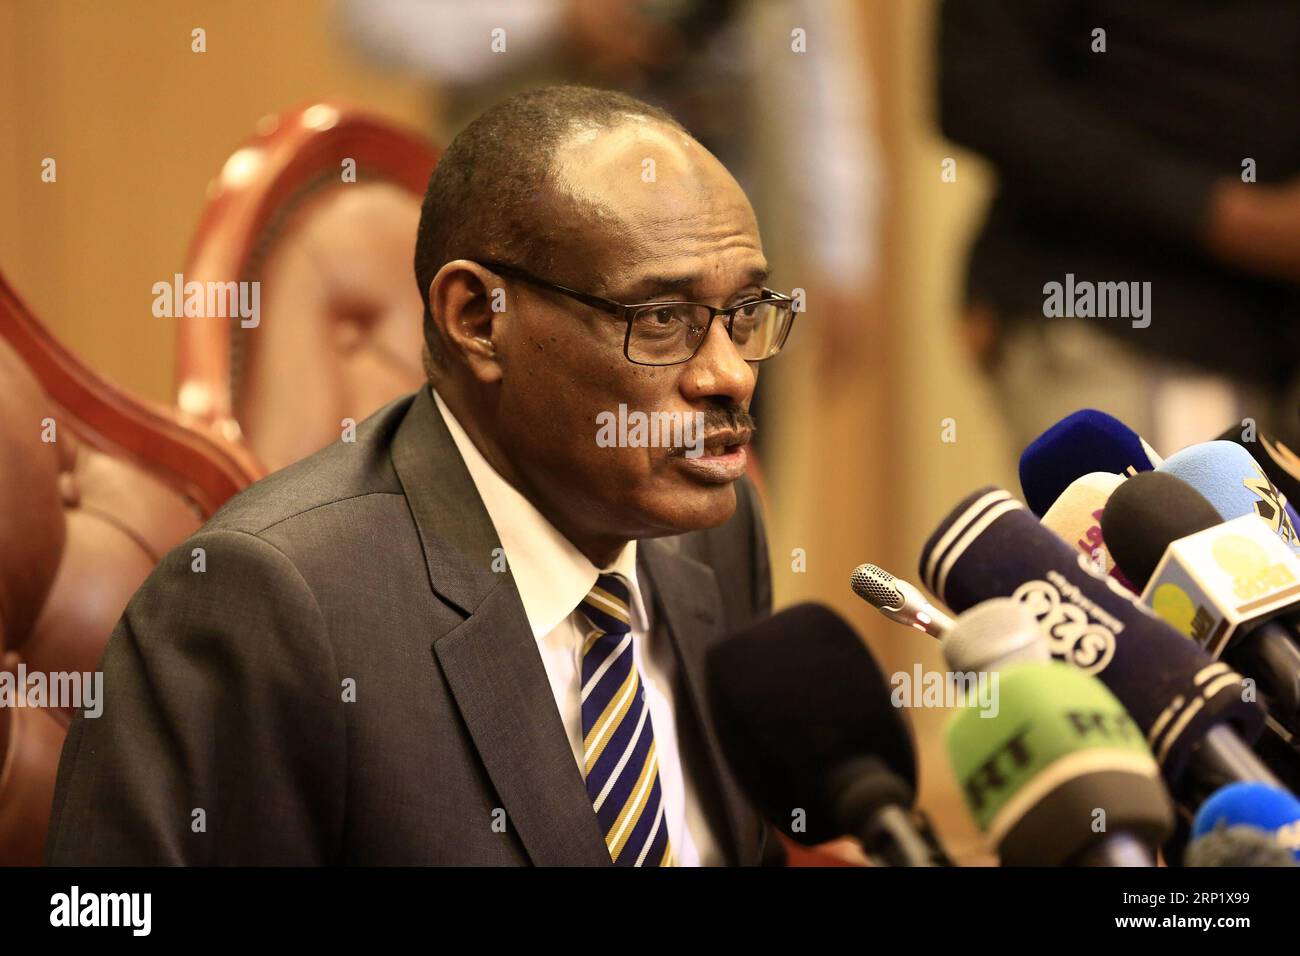 (180804) -- KHARTUM, 4. August 2018 -- der sudanesische Außenminister Al-Dirdiri Mohamed Ahmed spricht auf einer Pressekonferenz in Khartum, Sudan, am 4. August 2018. Südsudans Konfliktparteien werden am Sonntag ein letztes Abkommen über die Aufteilung der Macht und die Regierungsführung in Khartum unterzeichnen, teilte Al-Dirdiri Mohamed Ahmed am Samstag mit. SUDAN-KHARTUM-FM-PRESSEGESPRÄCH-SÜDSUDAN-MACHTTEILUNGSABKOMMEN MOHAMEDXKHIDIR PUBLICATIONXNOTXINXCHN Stockfoto